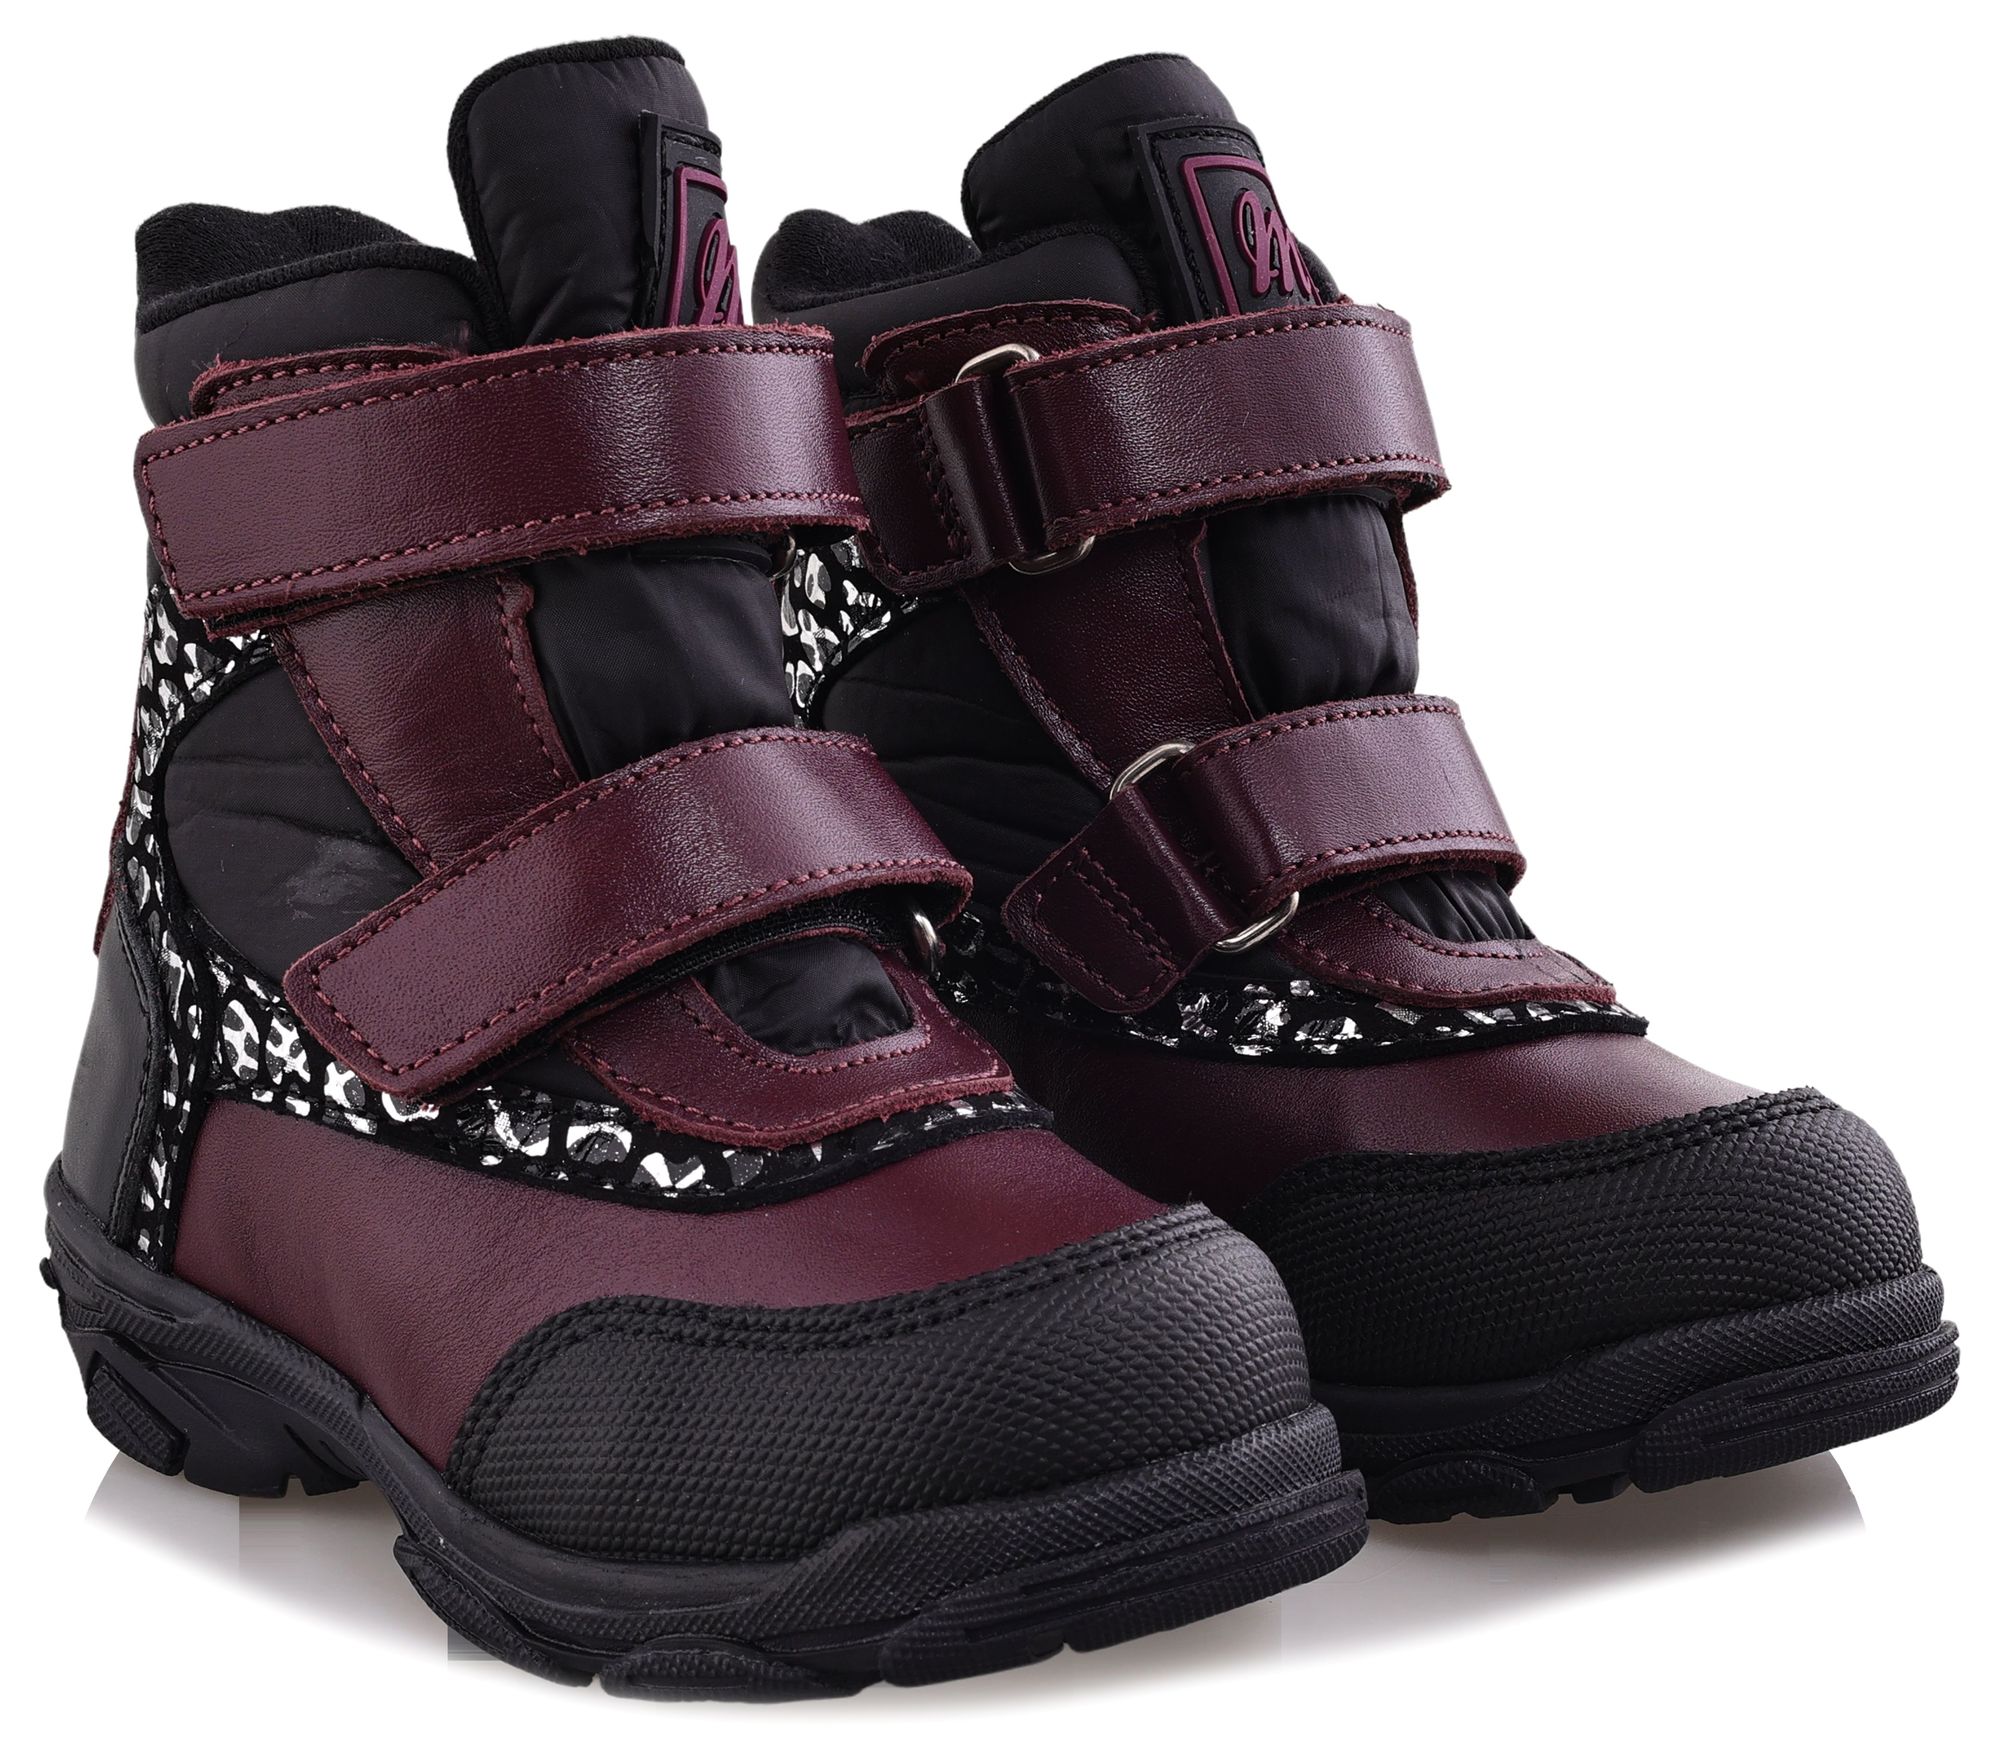 Ботинки Minimen для девочек, бордовые, размер 29, 2655-53-23B-03 minimen ботинки зимние 2187